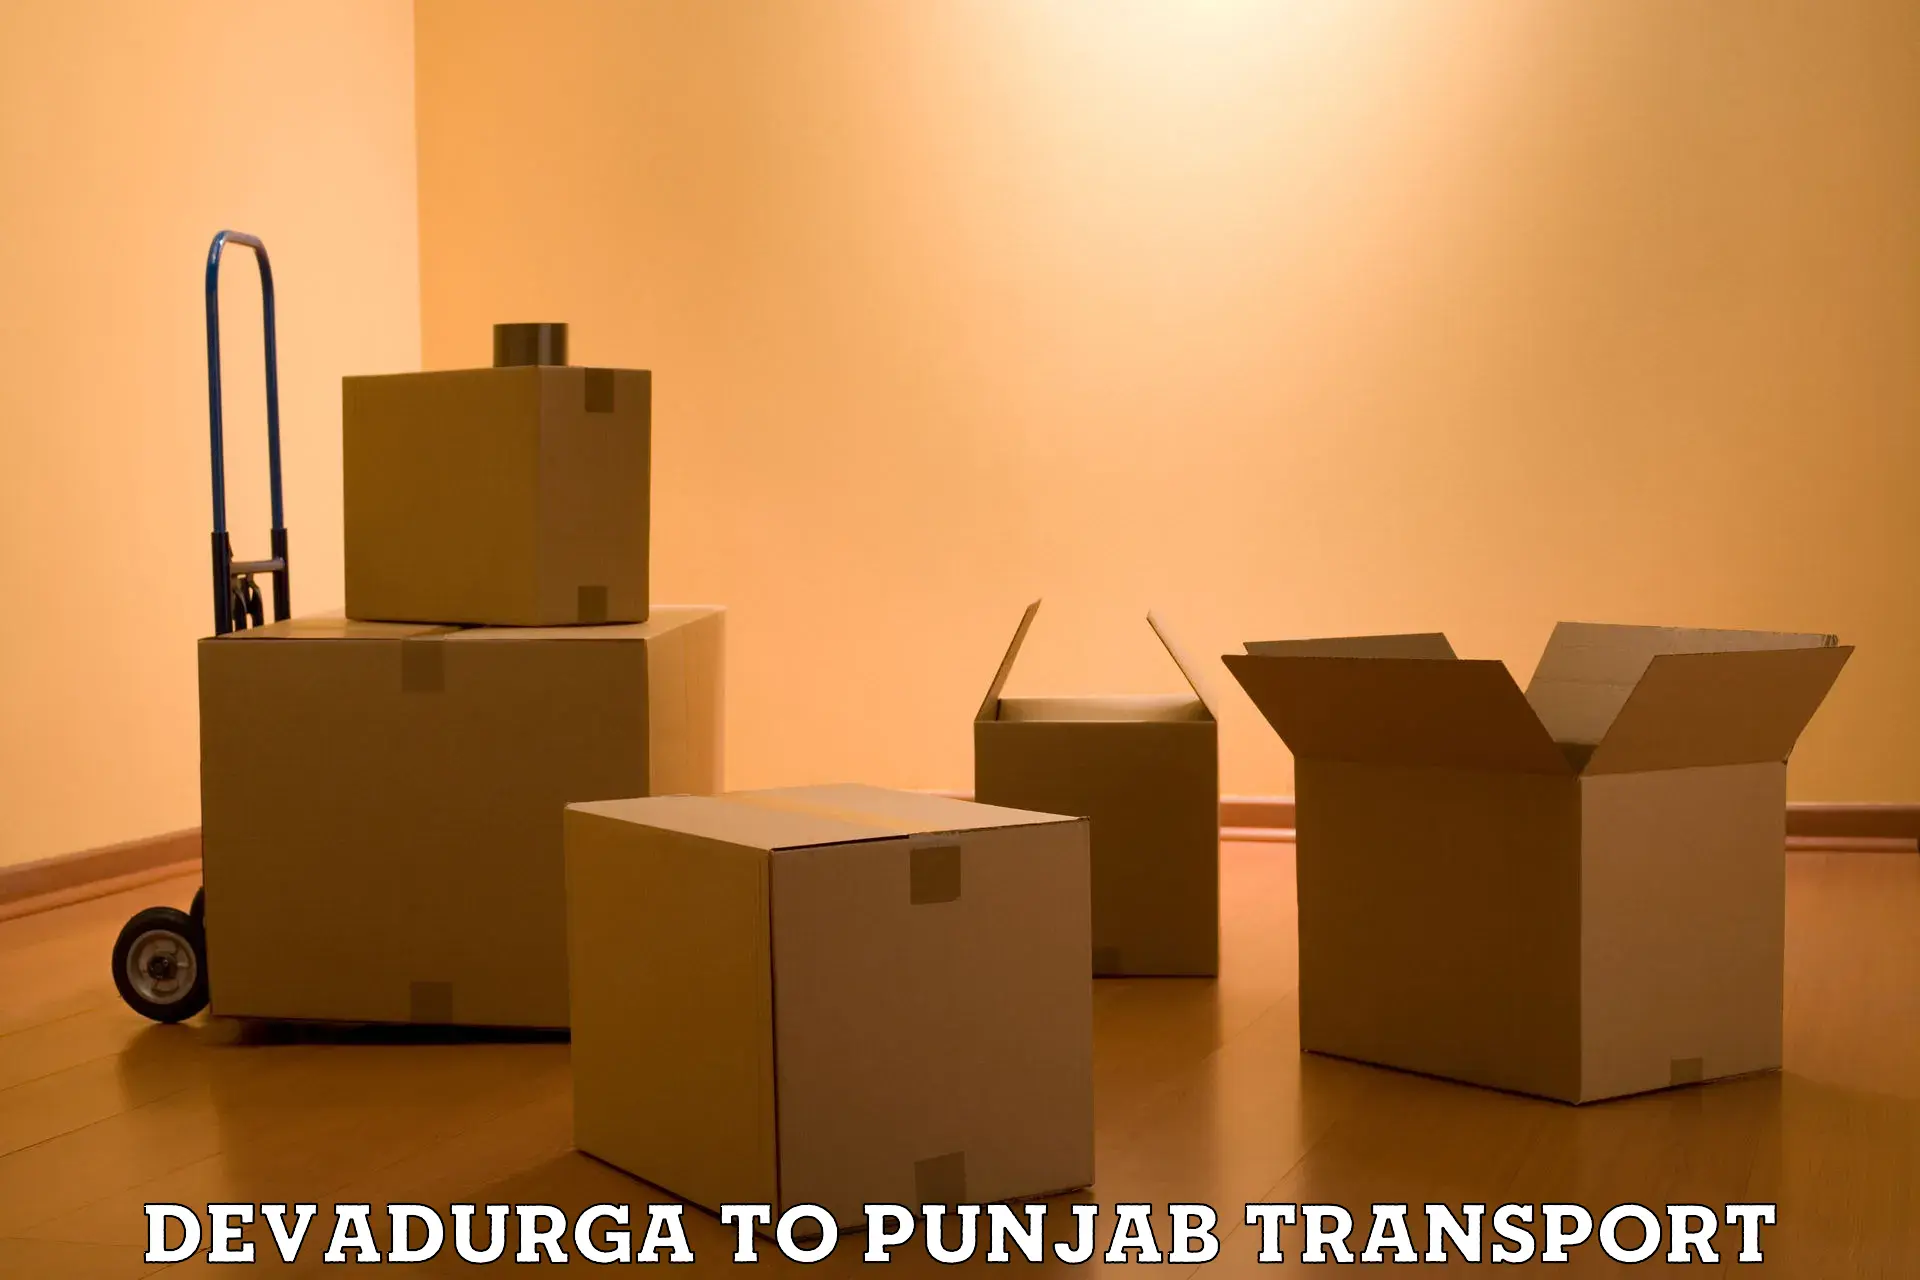 Container transport service in Devadurga to Dhuri